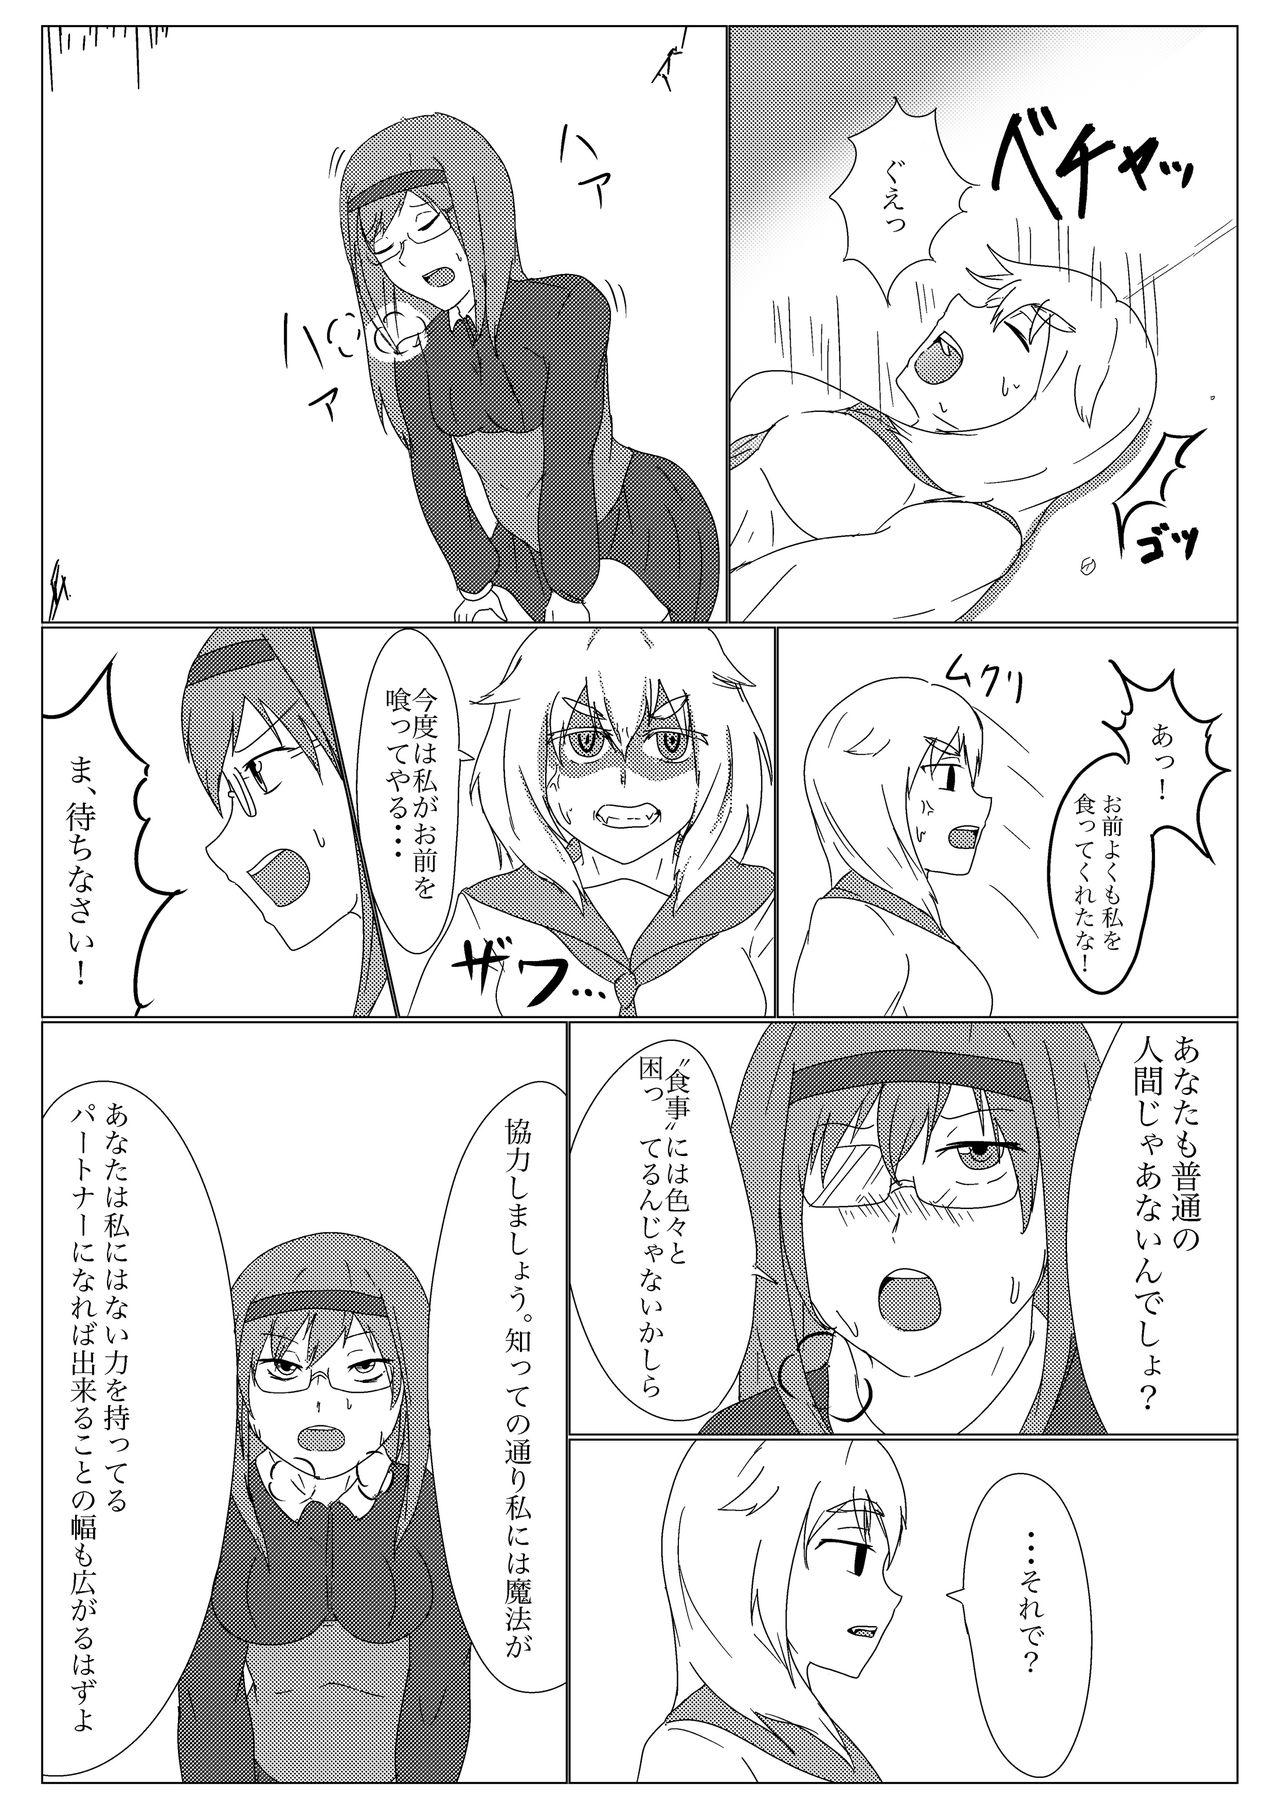 Chupada Uchi no ko no deai - Original 3some - Page 7